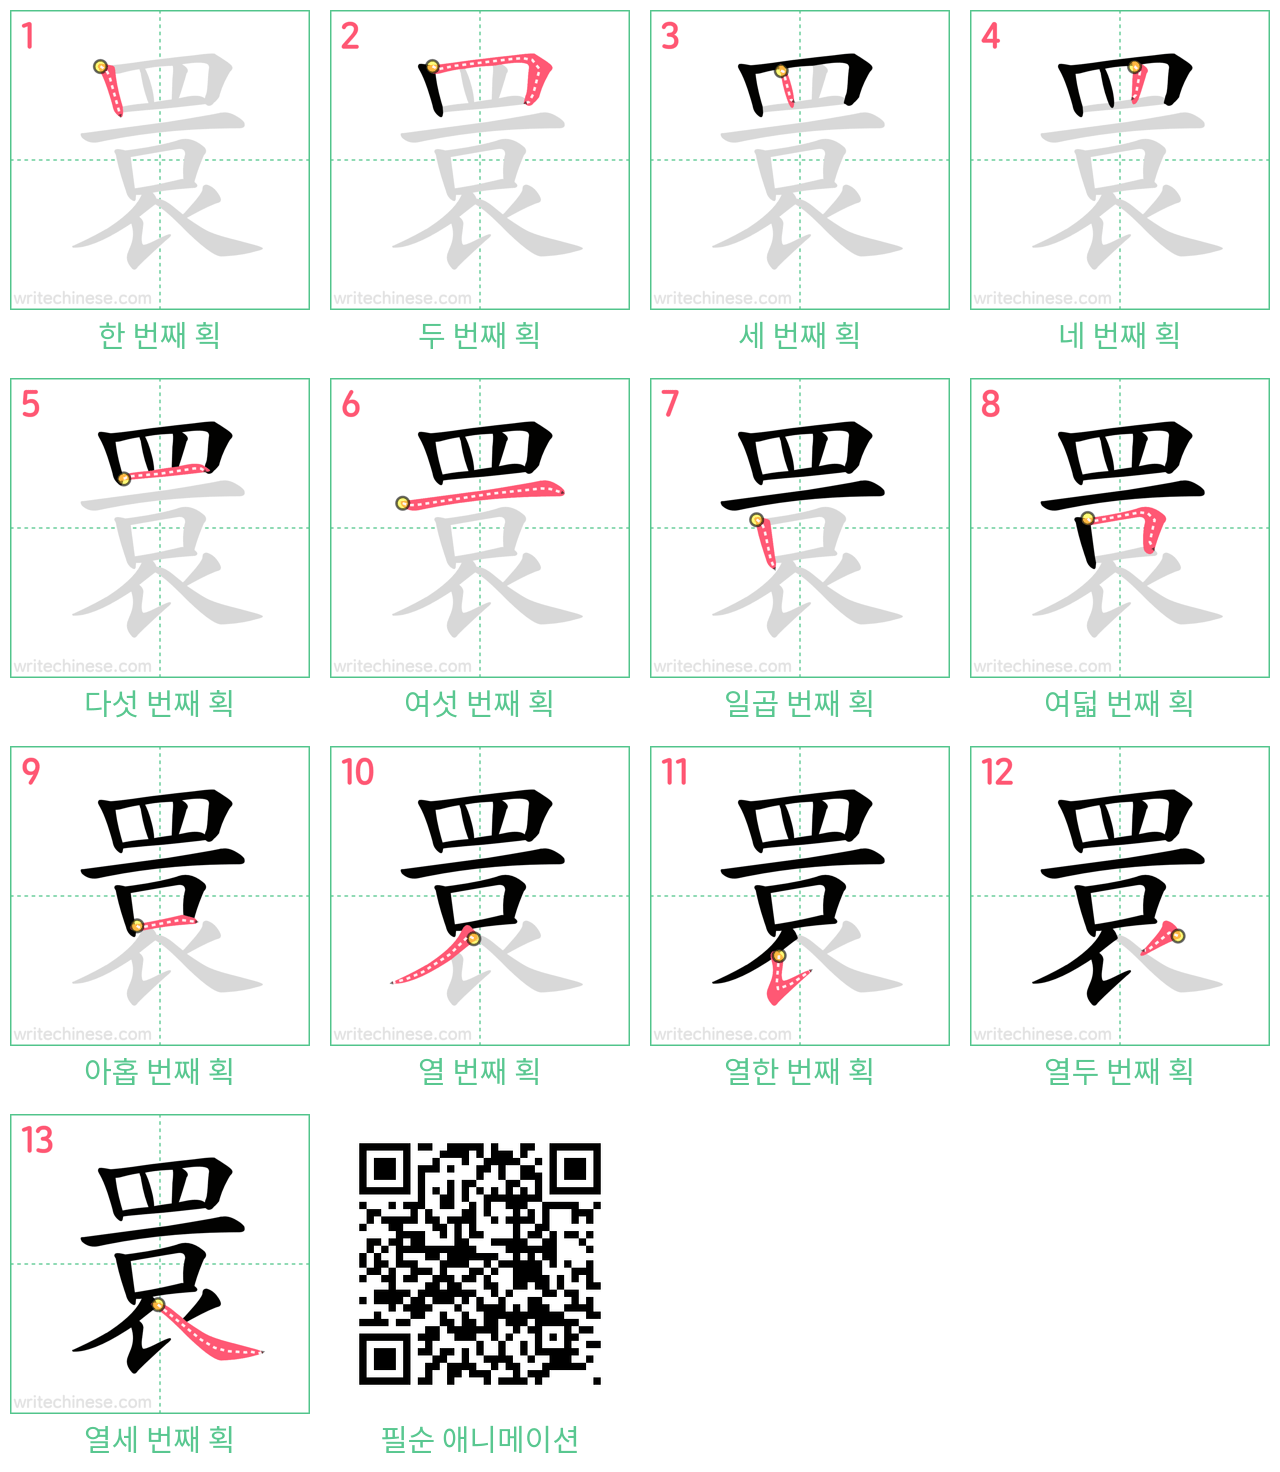 睘 step-by-step stroke order diagrams